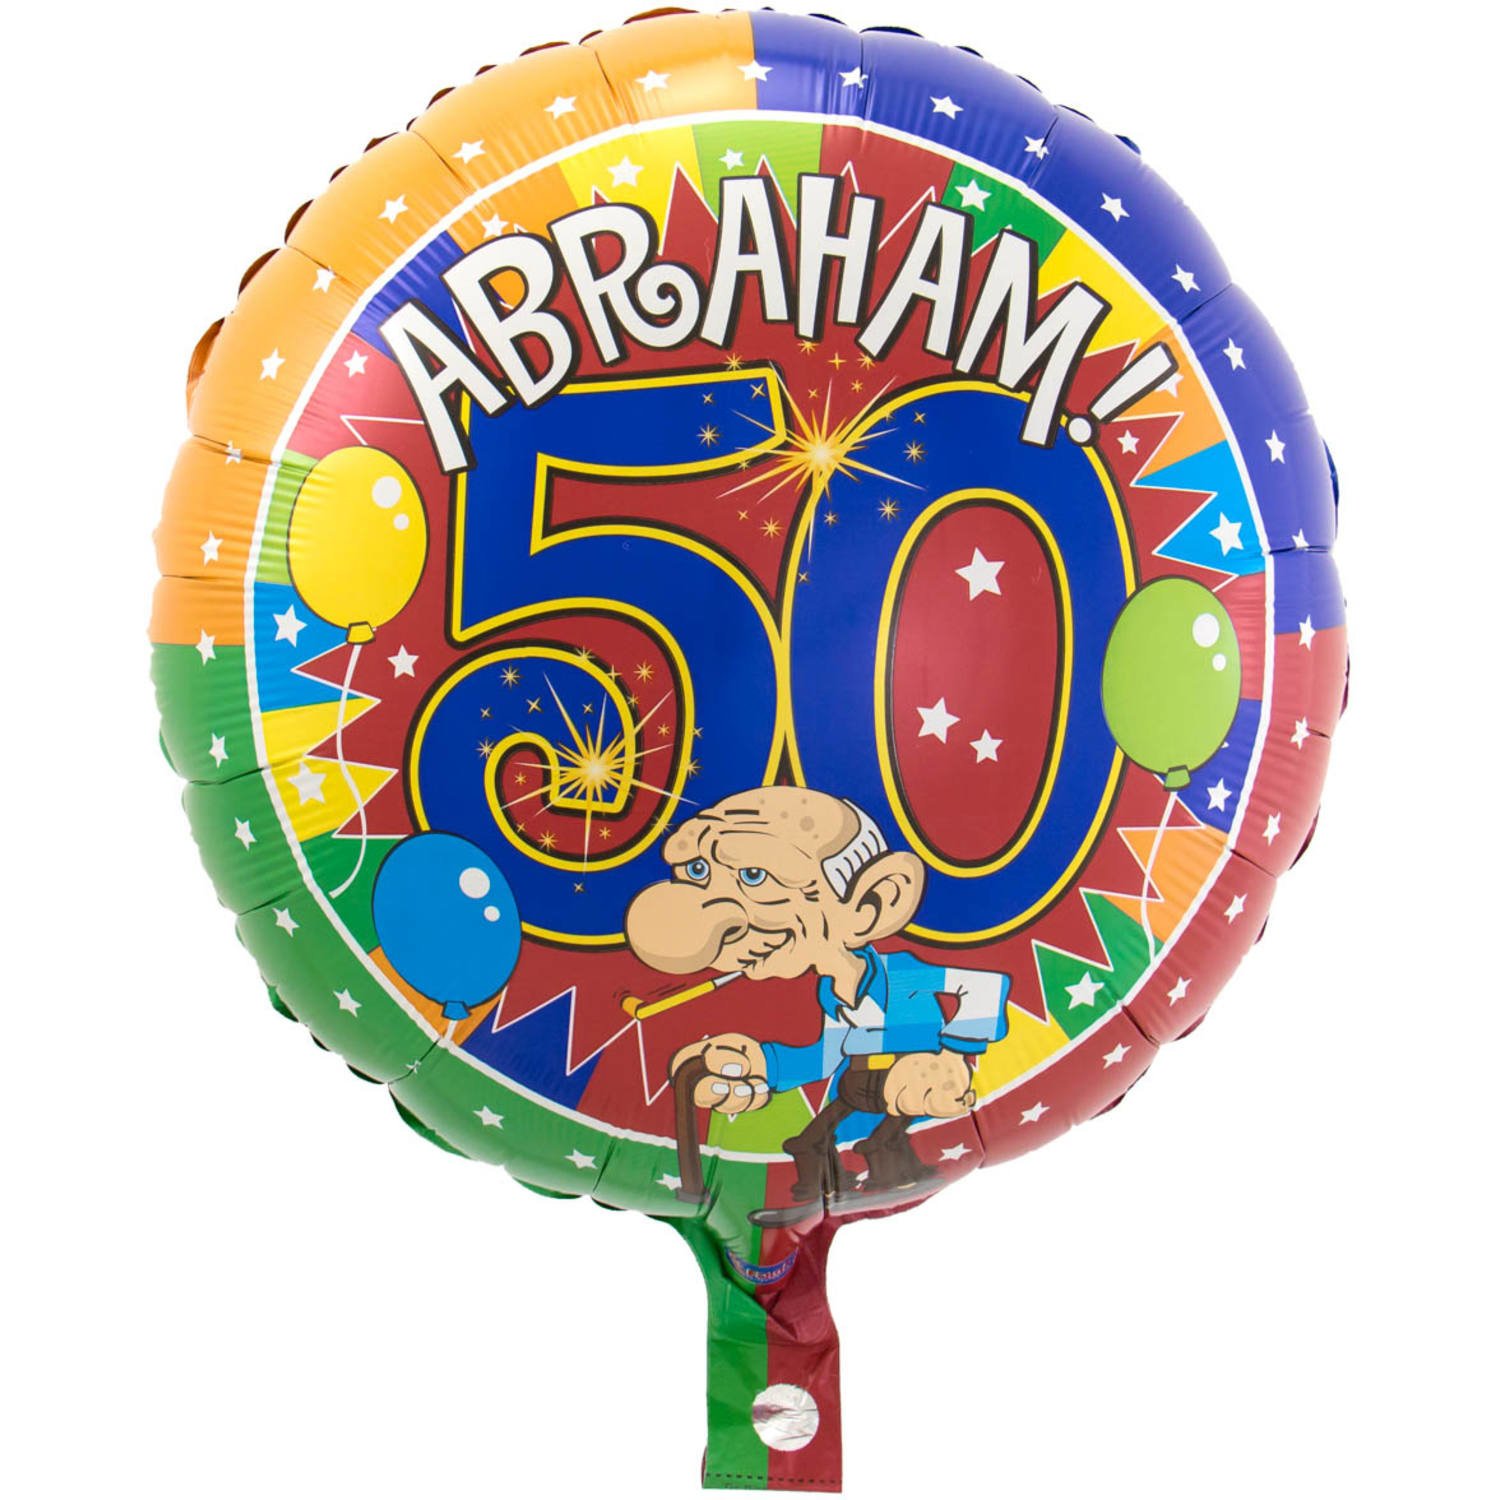 50 Jaar Abraham Knalfeest folieballon 43cm